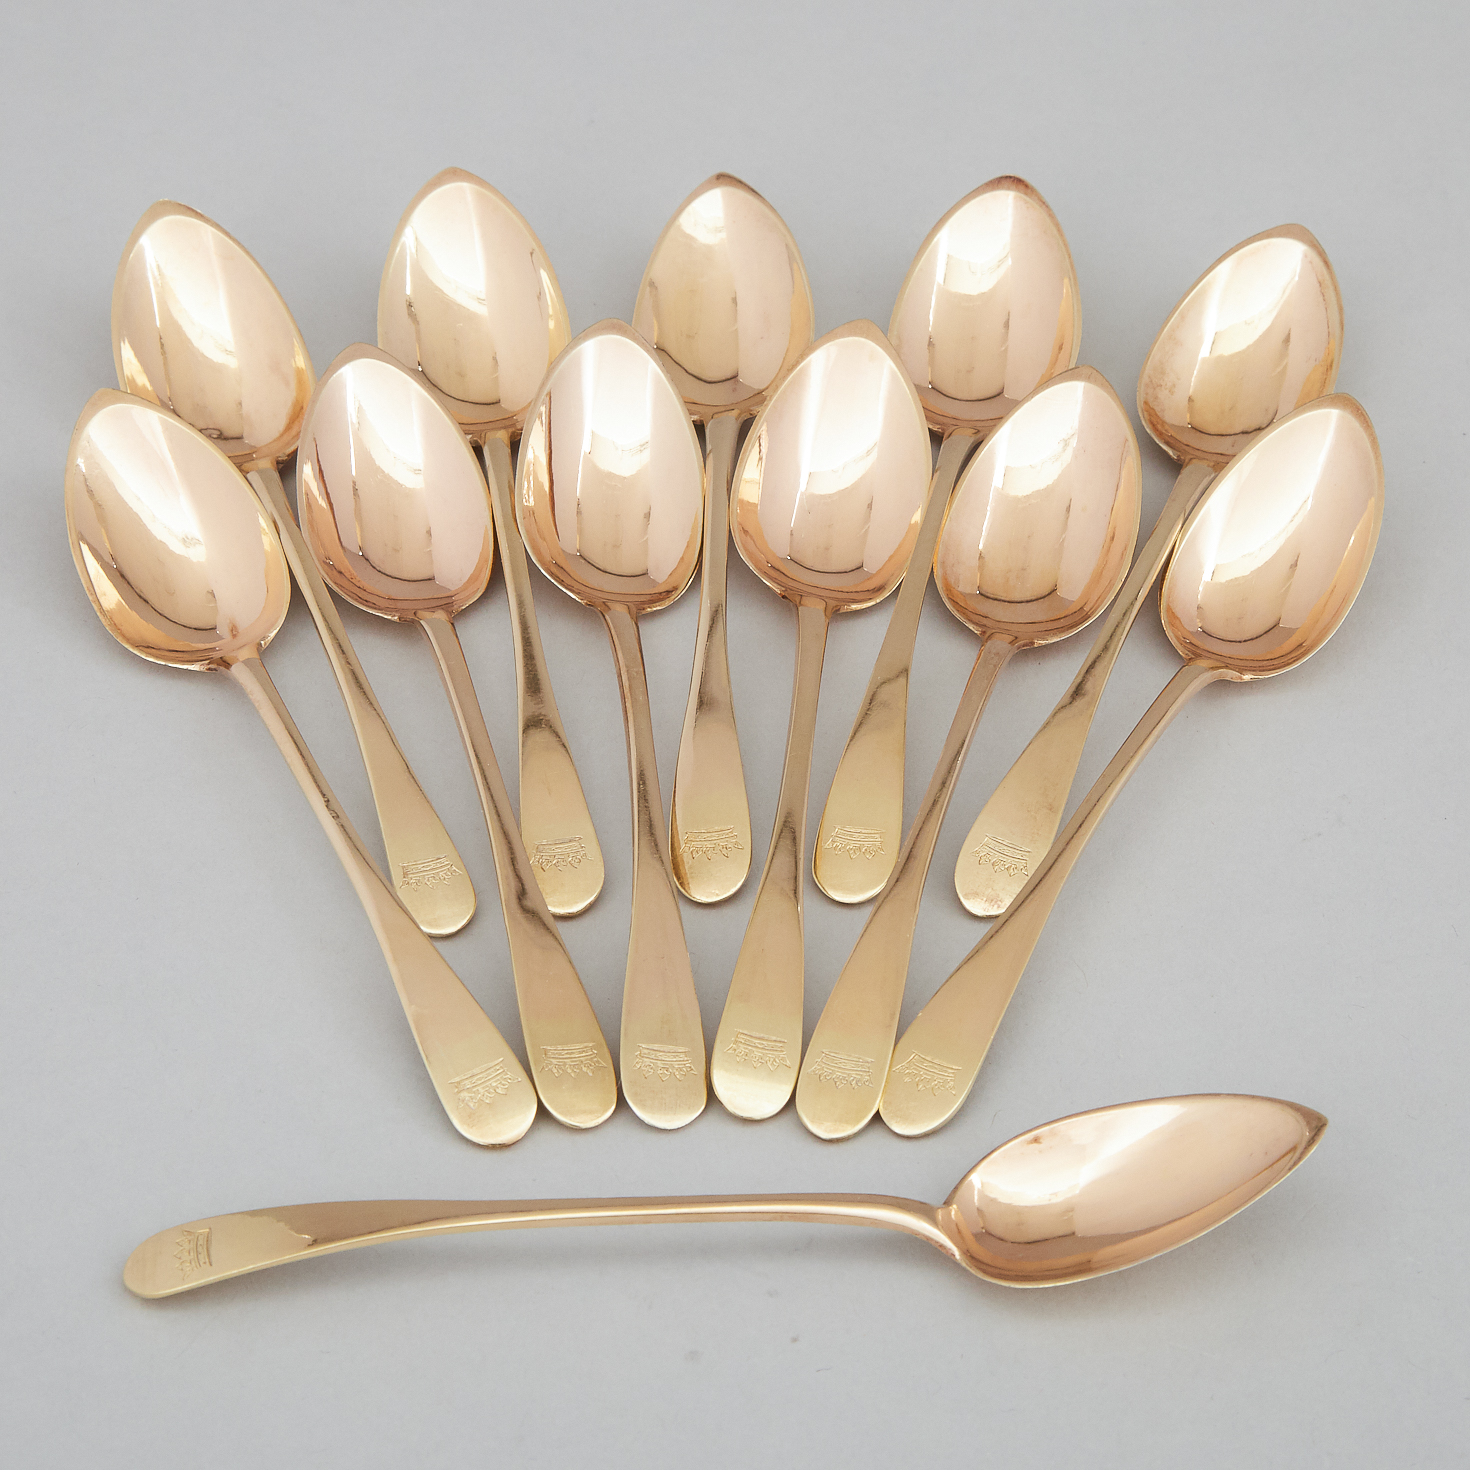 Set of Twelve French Silver-Gilt Tea Spoons, François-Dominique Naudin, Paris, c.1797-1809